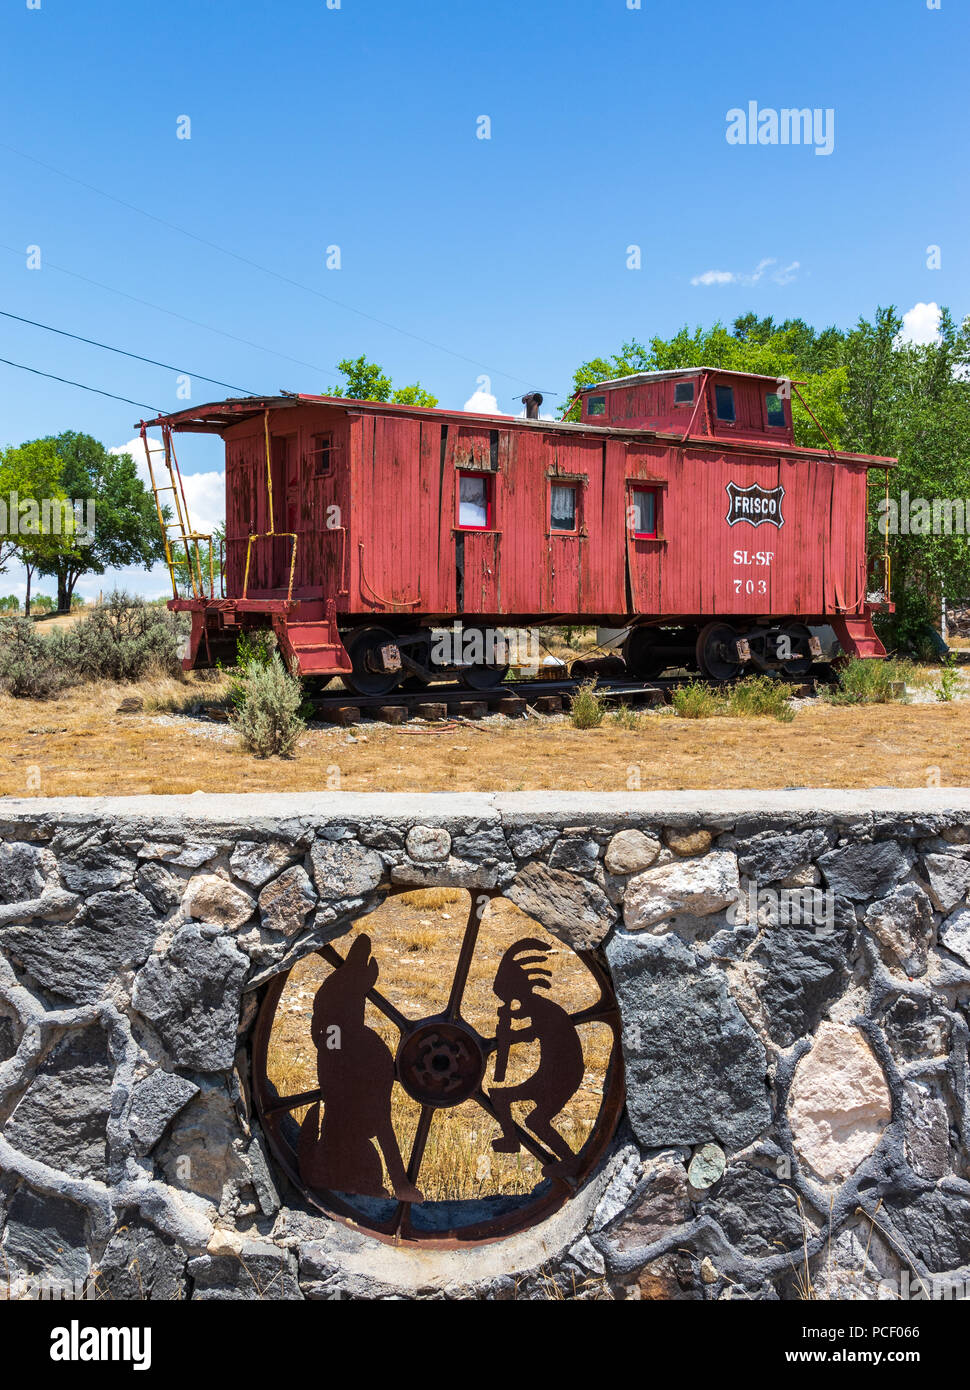 TAOS, NM, USA-12 Juli 18: eine Felswand mit iconic Metall Figuren von Kokopelli und Coyote in sie eingebettet ist, der mit einem Zug caboose Darüber hinaus. Stockfoto